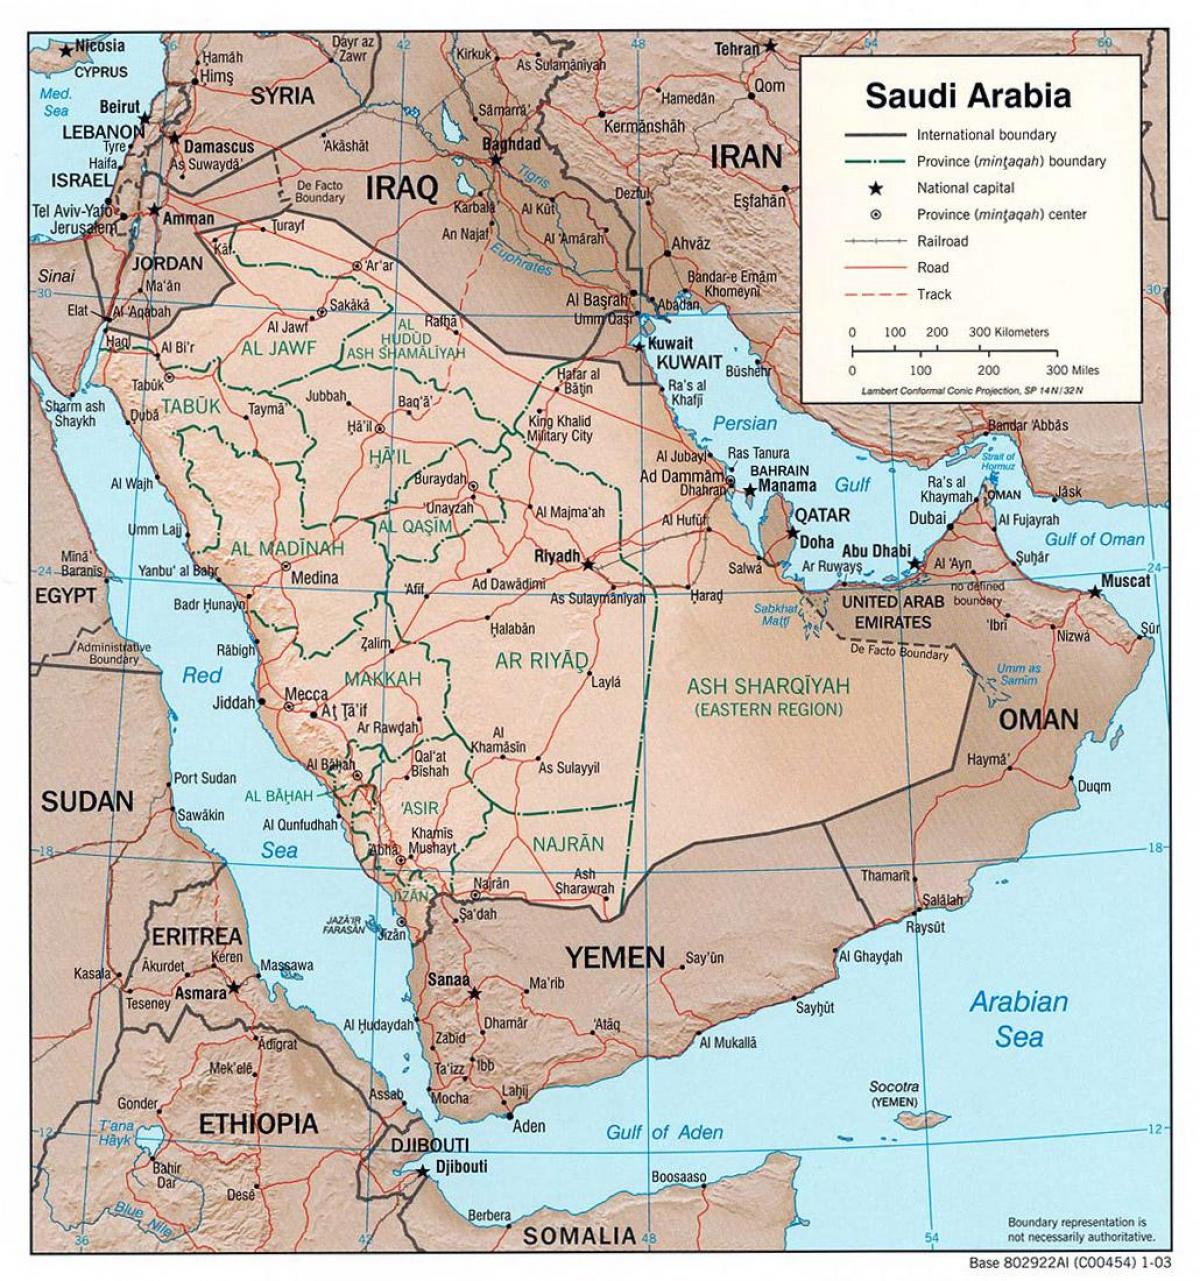 नक्शे के साथ सऊदी अरब के शहरों से सड़क मार्ग द्वारा